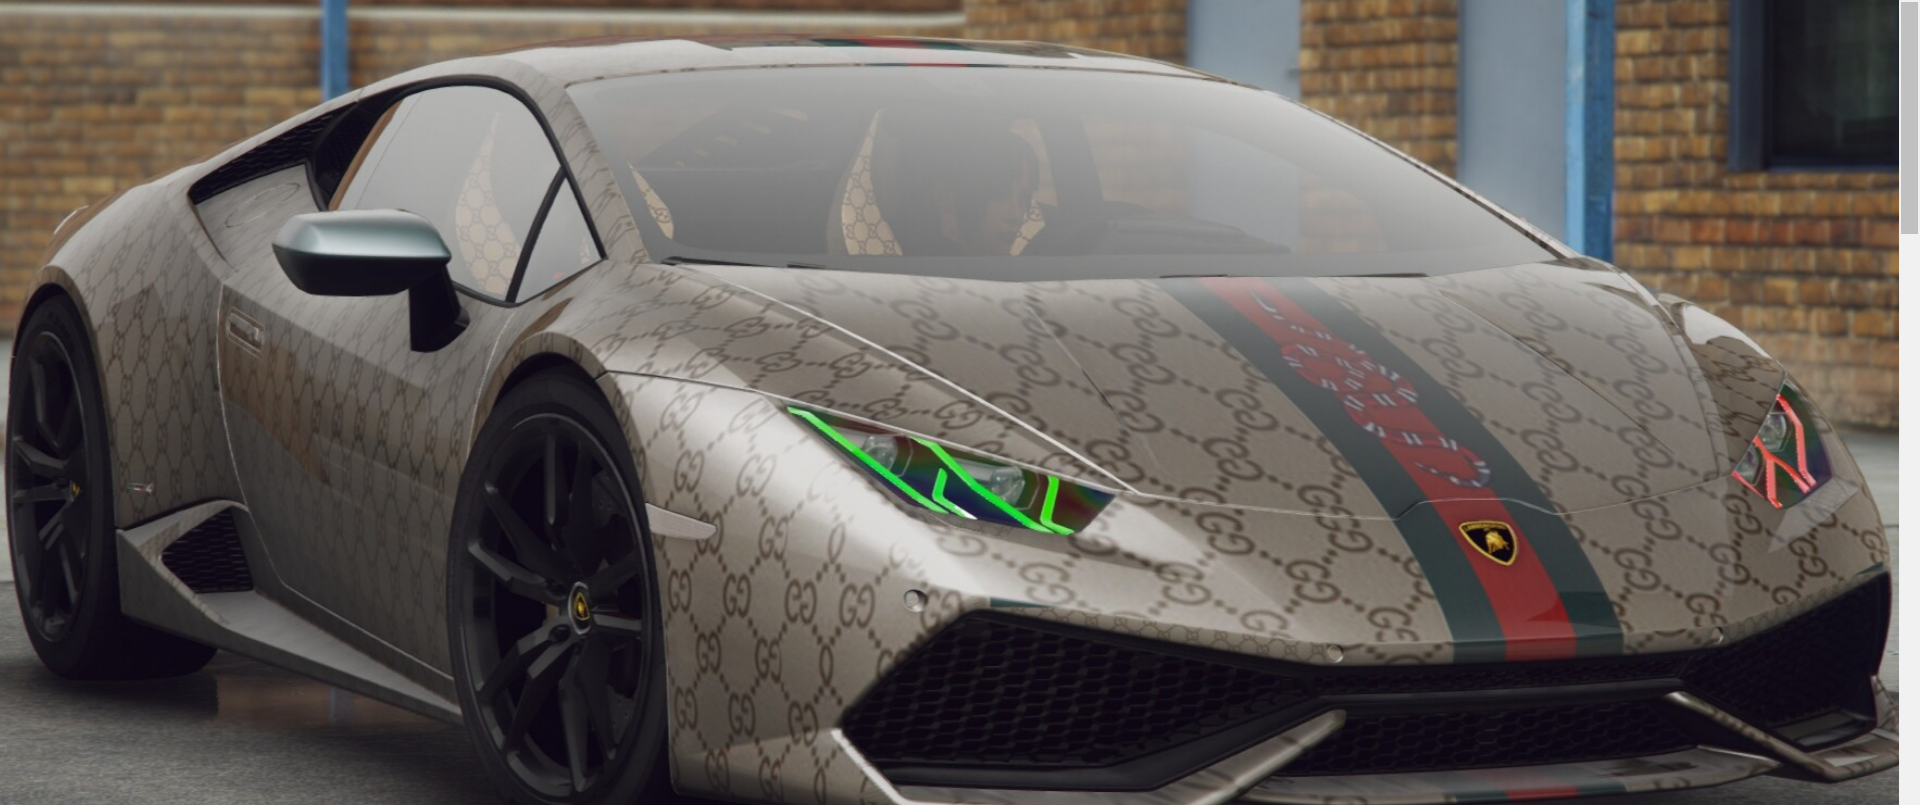 Lamborghini urus gta 5 replace фото 52